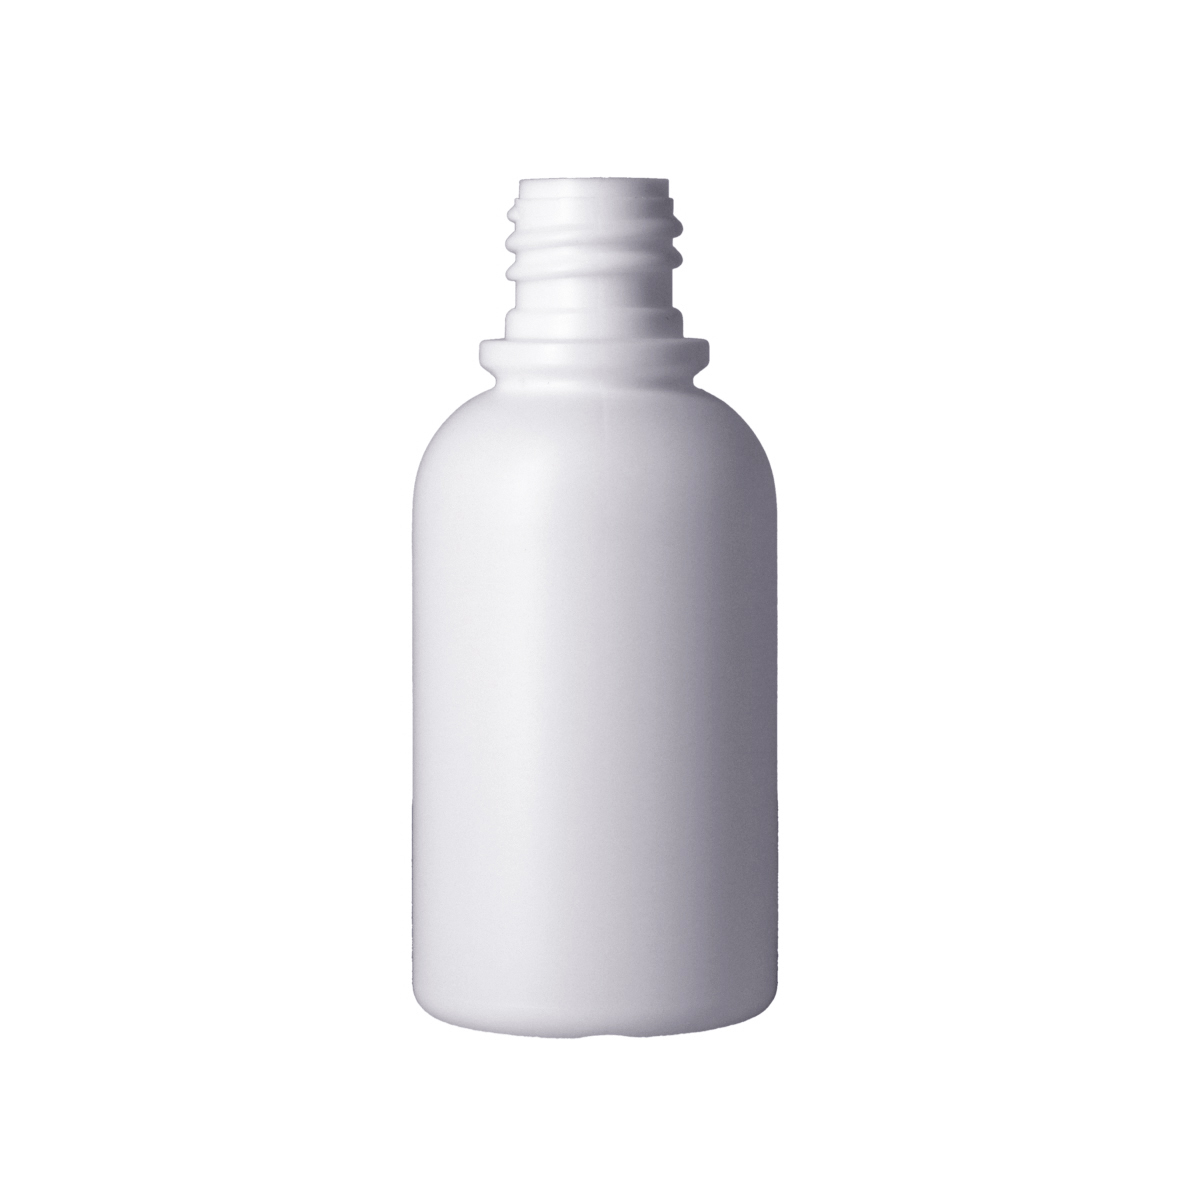 PE瓶,100ml以下,HDPE瓶,PE瓶,旅行組商品,洗髮精,沐浴乳,乳液,PCR